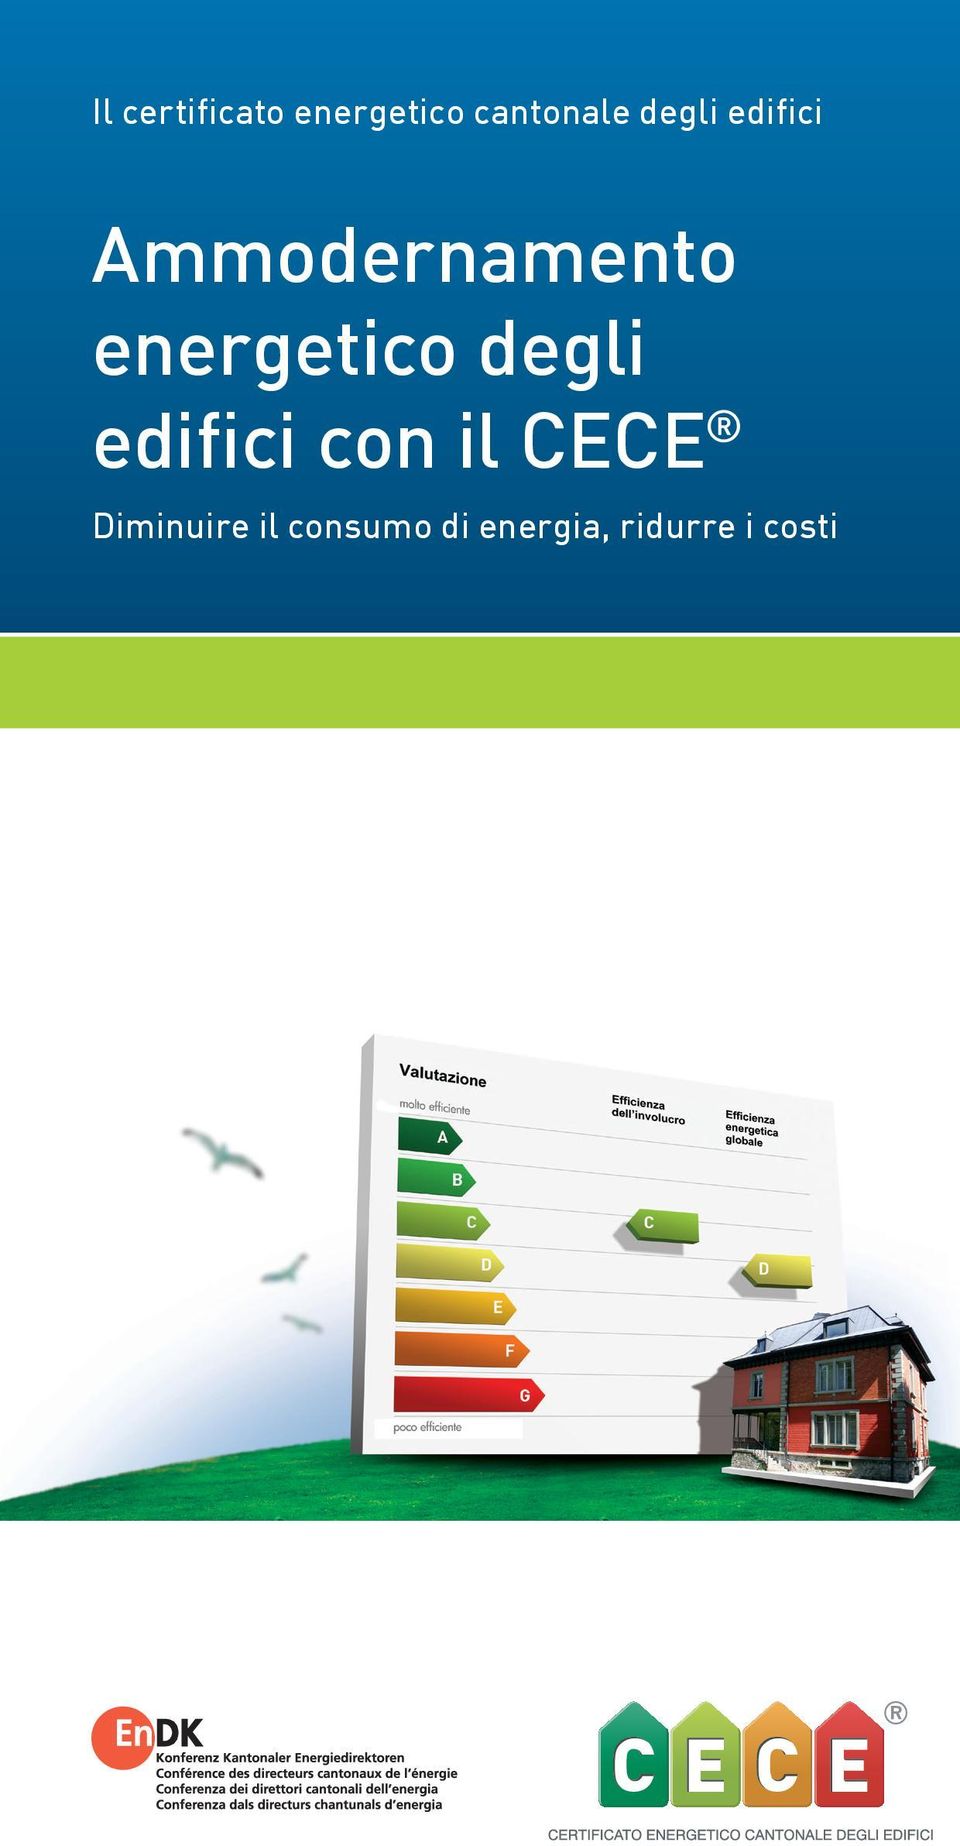 energetico degli edifici con il CECE